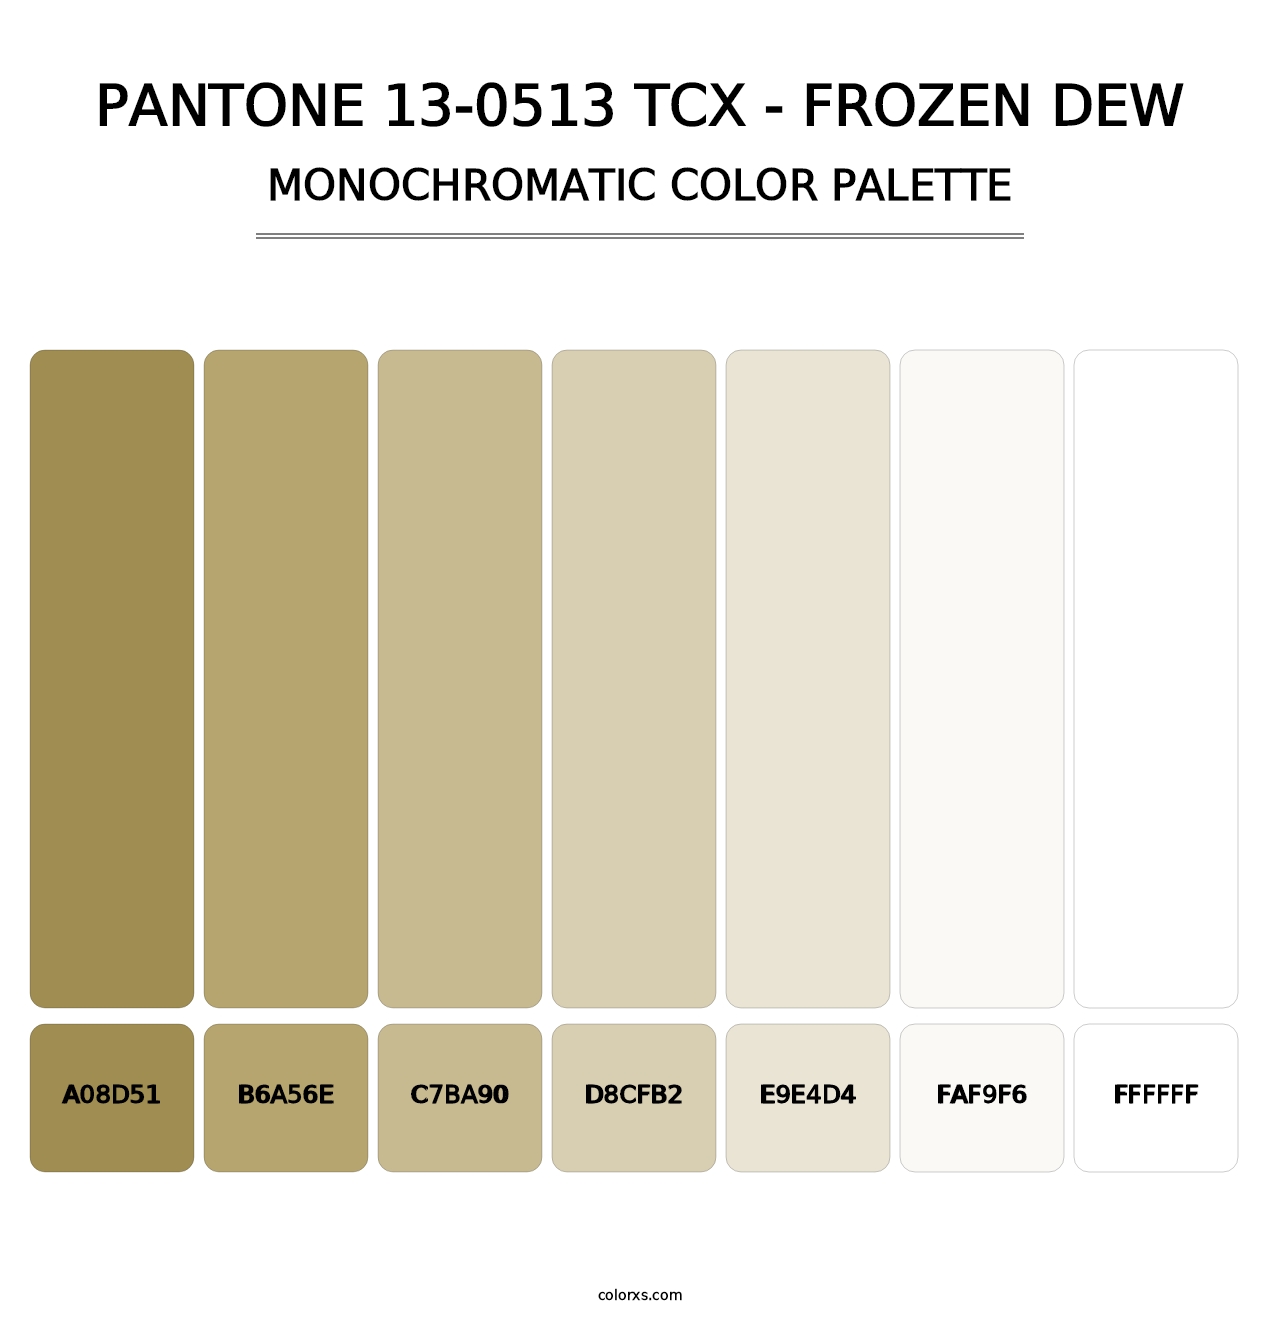 PANTONE 13-0513 TCX - Frozen Dew - Monochromatic Color Palette